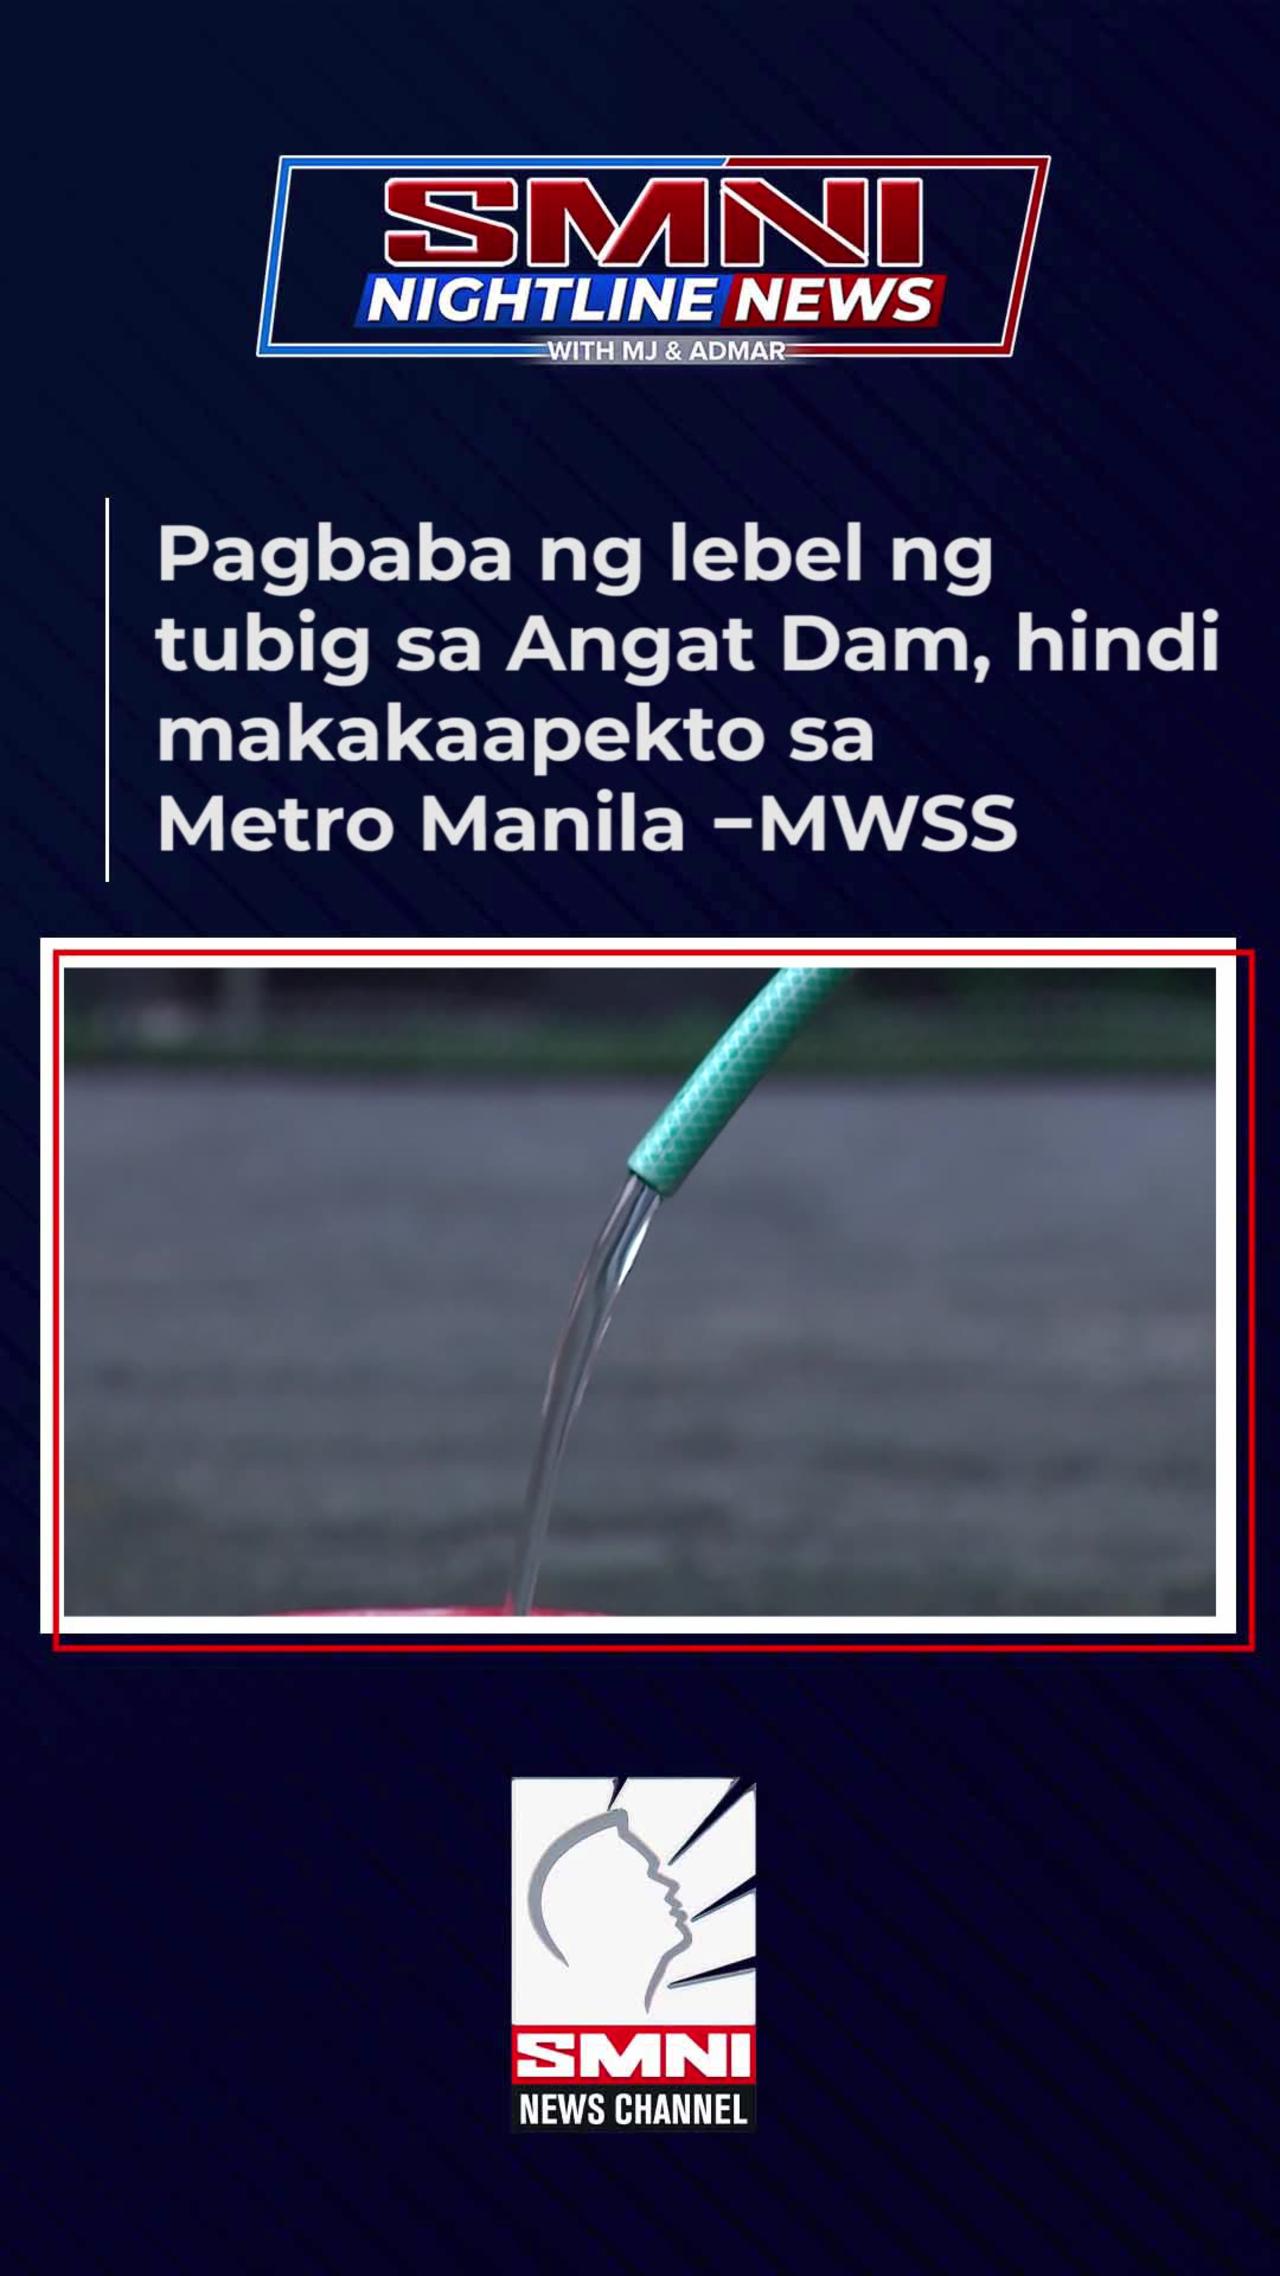 Pagbaba ng lebel ng tubig sa Angat Dam, hindi makakaapekto sa Metro Manila —MWSS